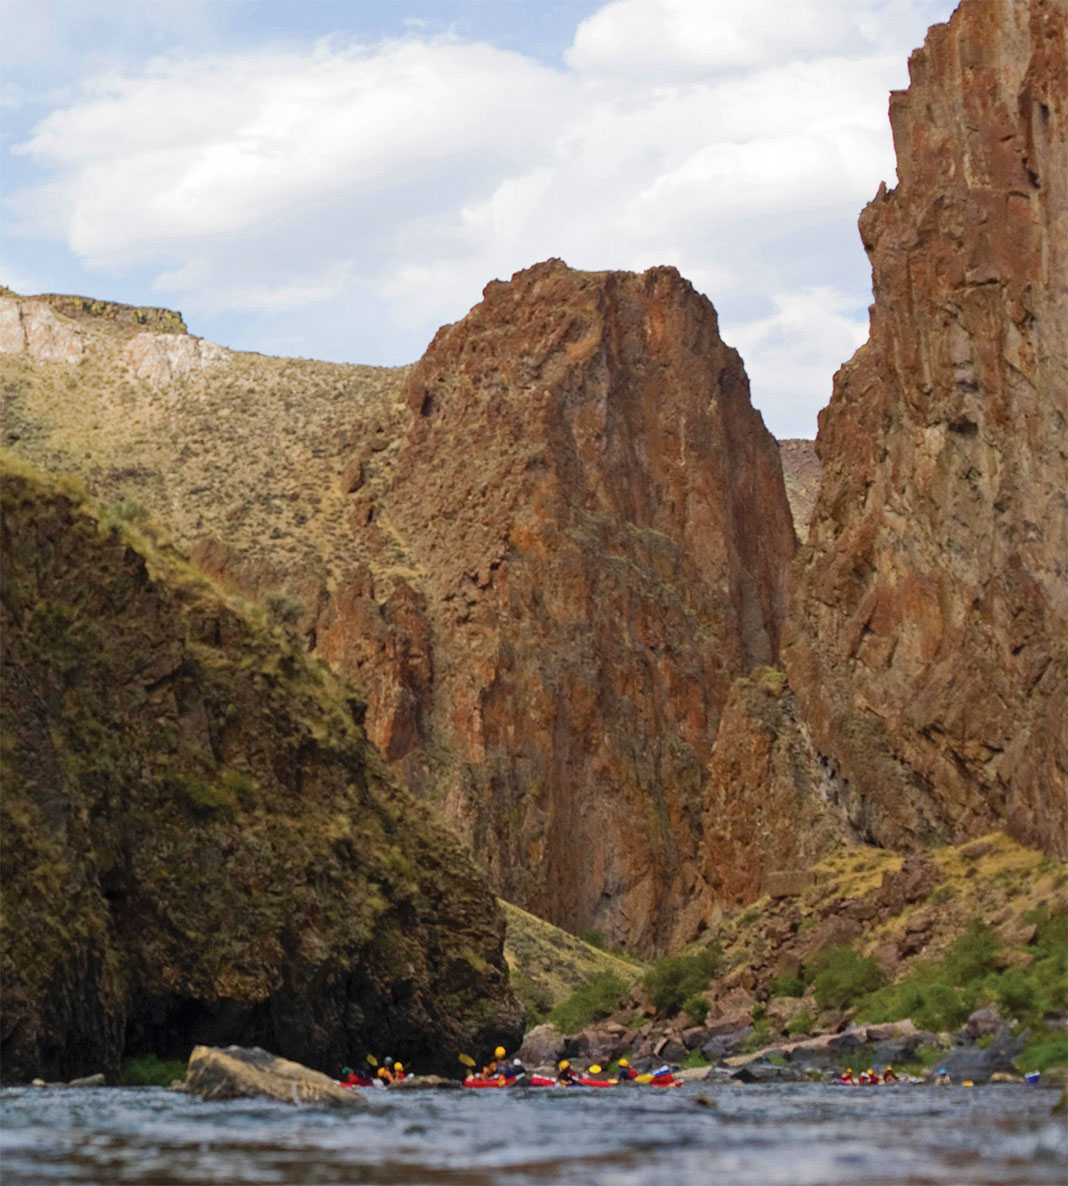 Kayakers paddling at base of canyon walls